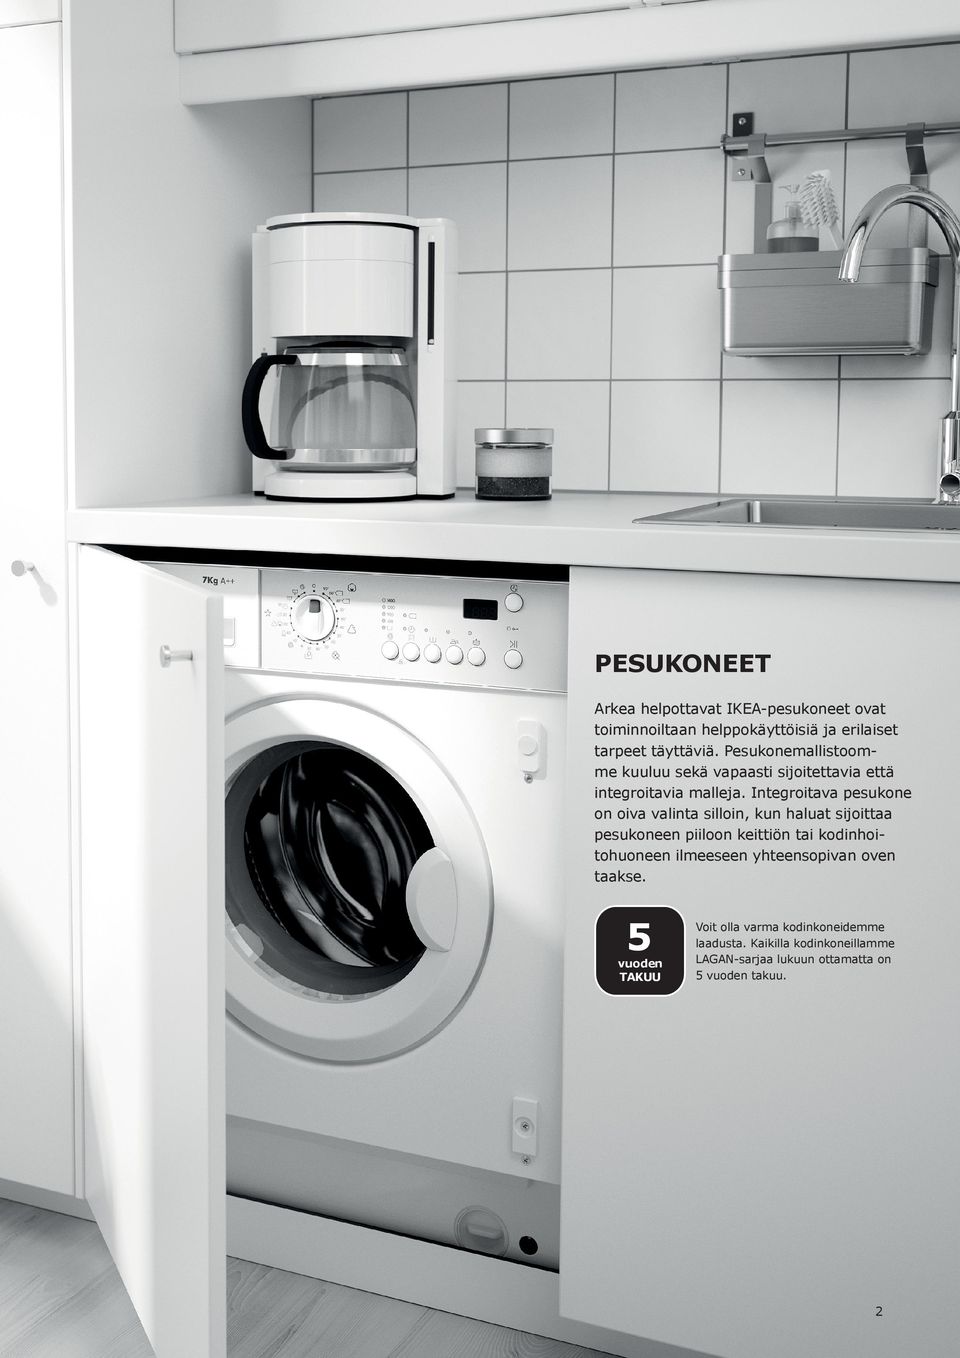 Integroitava pesukone on oiva valinta silloin, kun haluat sijoittaa pesukoneen piiloon keittiön tai kodinhoitohuoneen